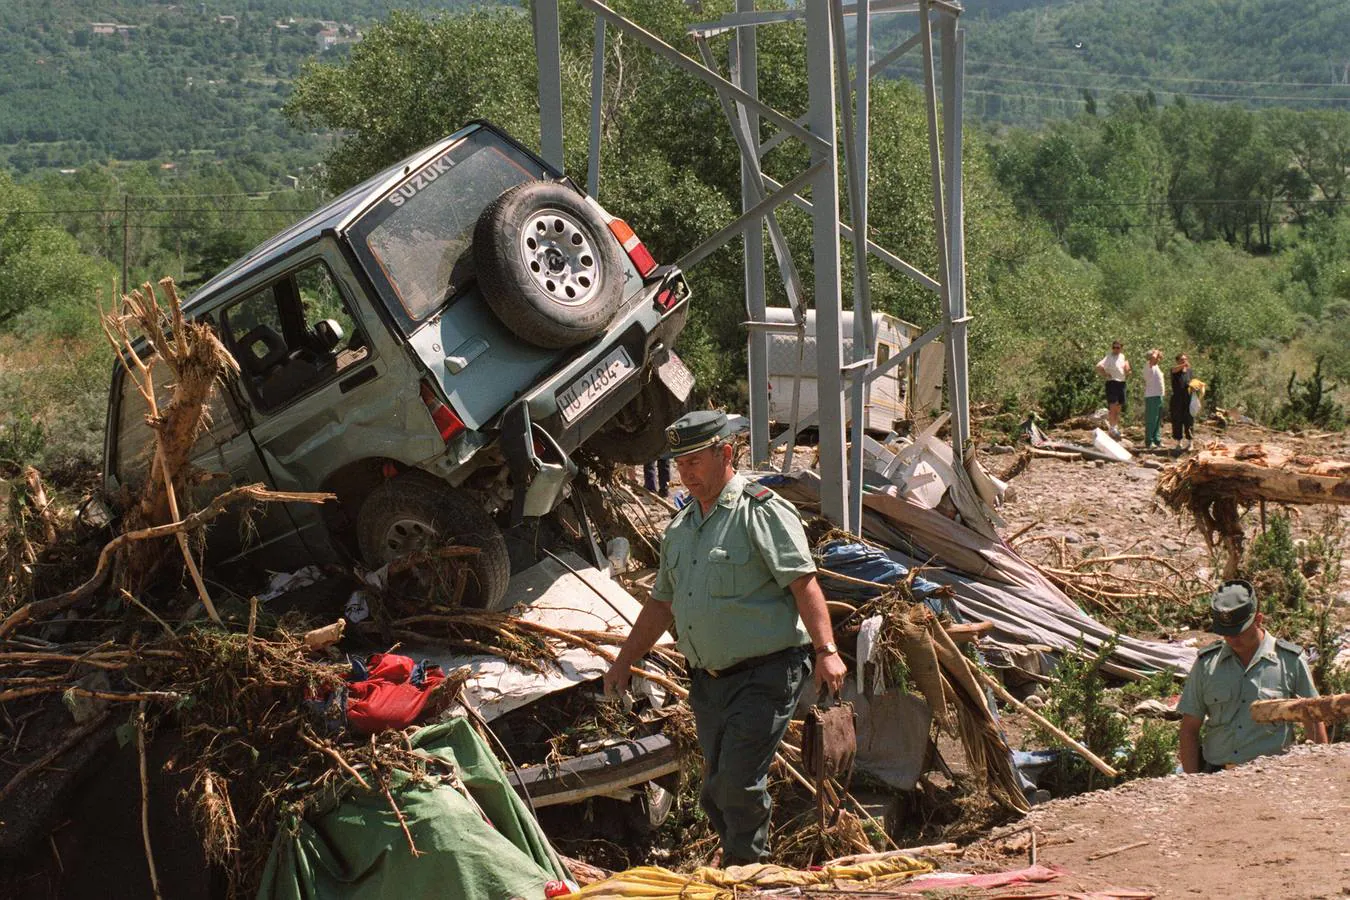 El 7 de agosto de 1996, 86 personas perdieron la vida en la que se ha convertido en la mayor tragedia natural de la historia reciente de España